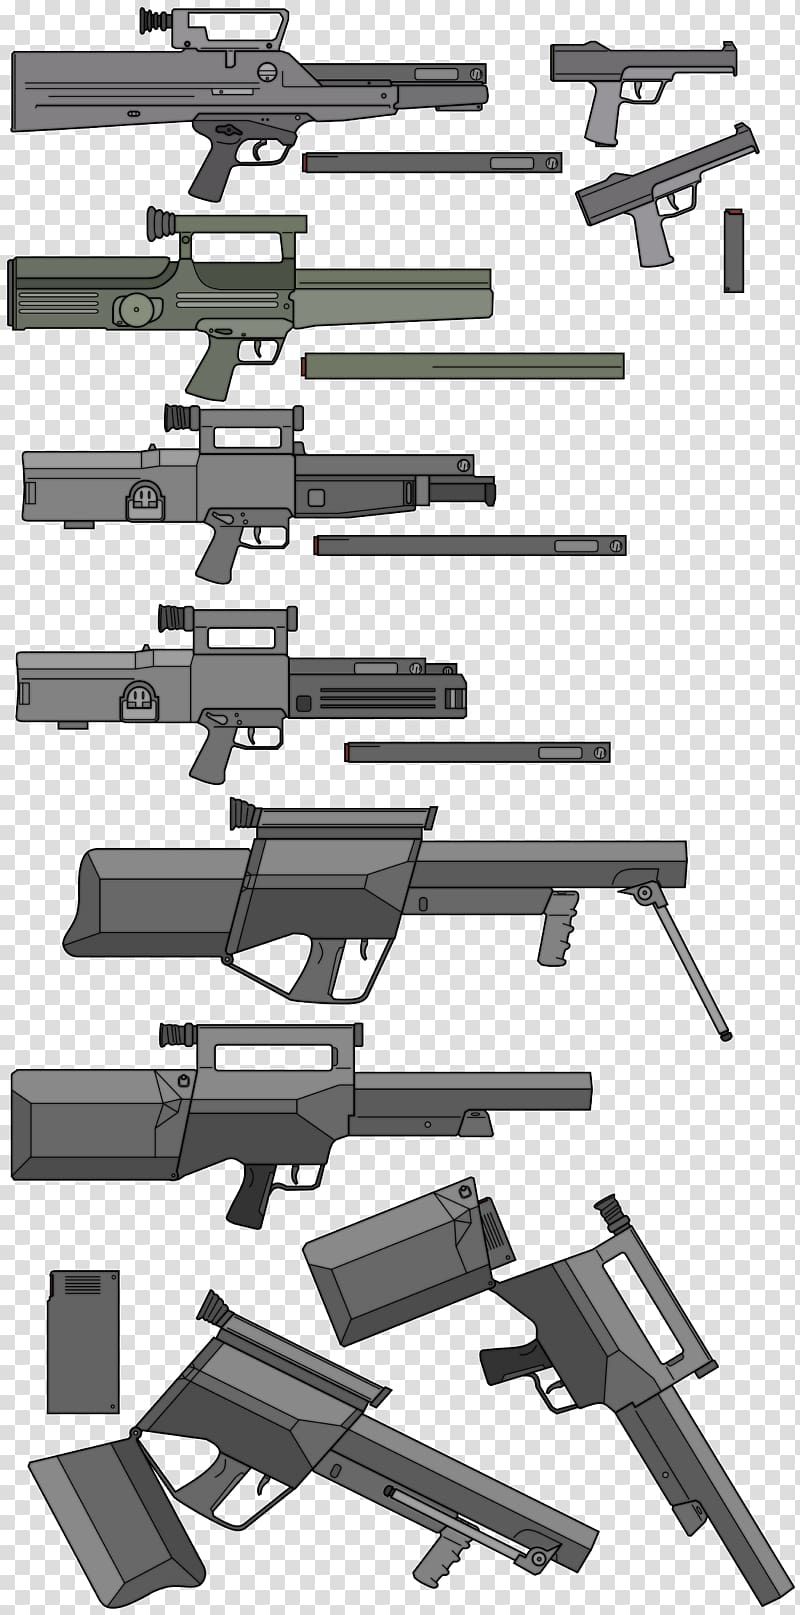 Assault rifle Firearm Heckler & Koch G11 Sniper rifle, assault rifle transparent background PNG clipart